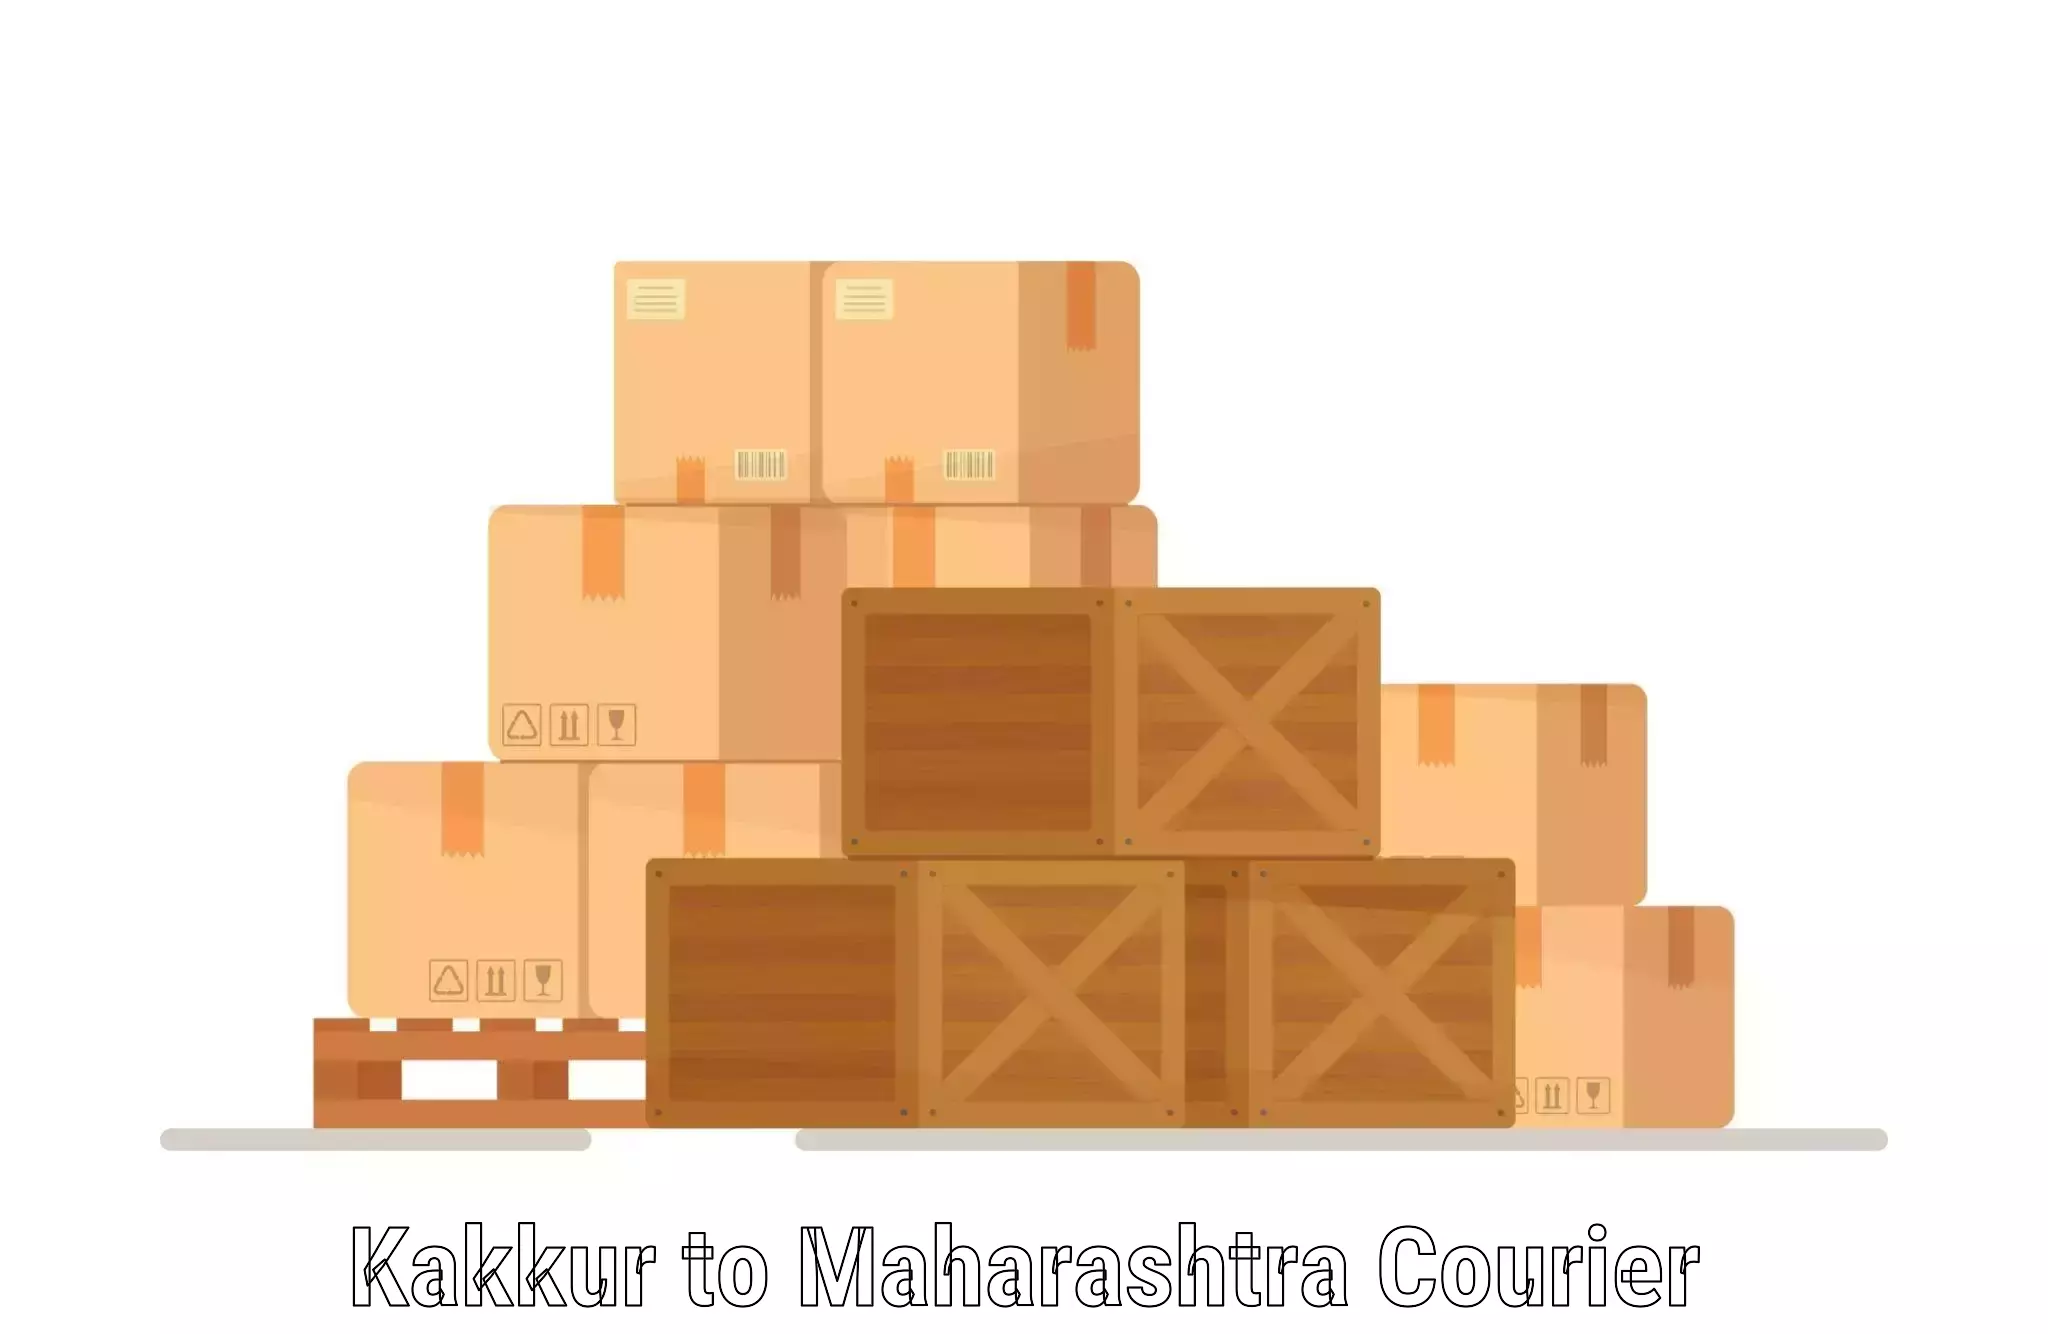 International shipping rates in Kakkur to Amravati